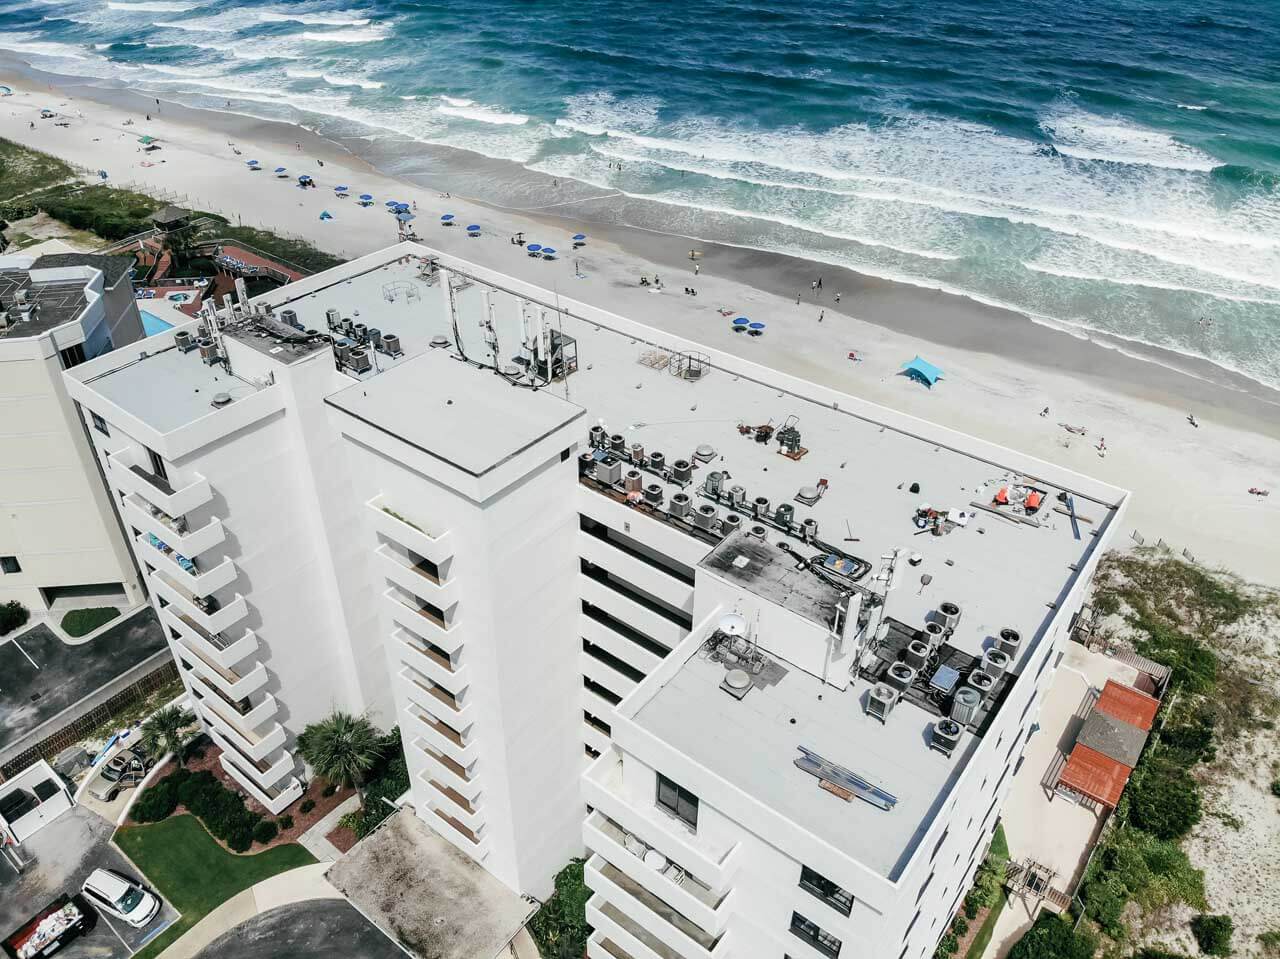 Aerial view of a beachfront condominium building